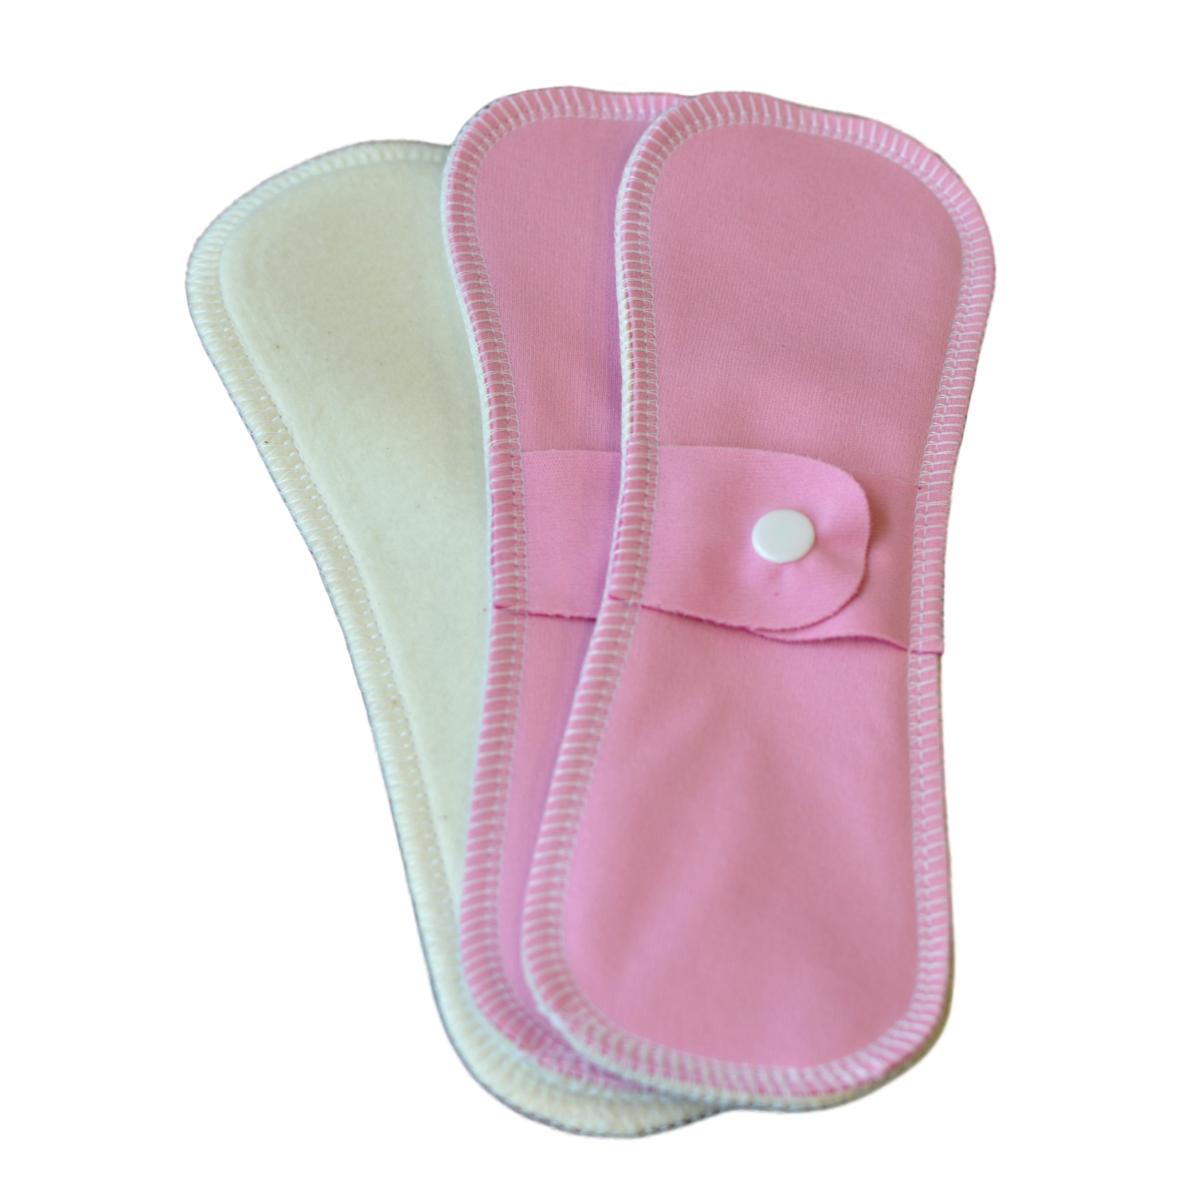 KiyomiQaQ Serviettes hygièniques lavables Bambou réutilisables lingette Lavable menstruel Serviette hygiénique de Pad Mama 